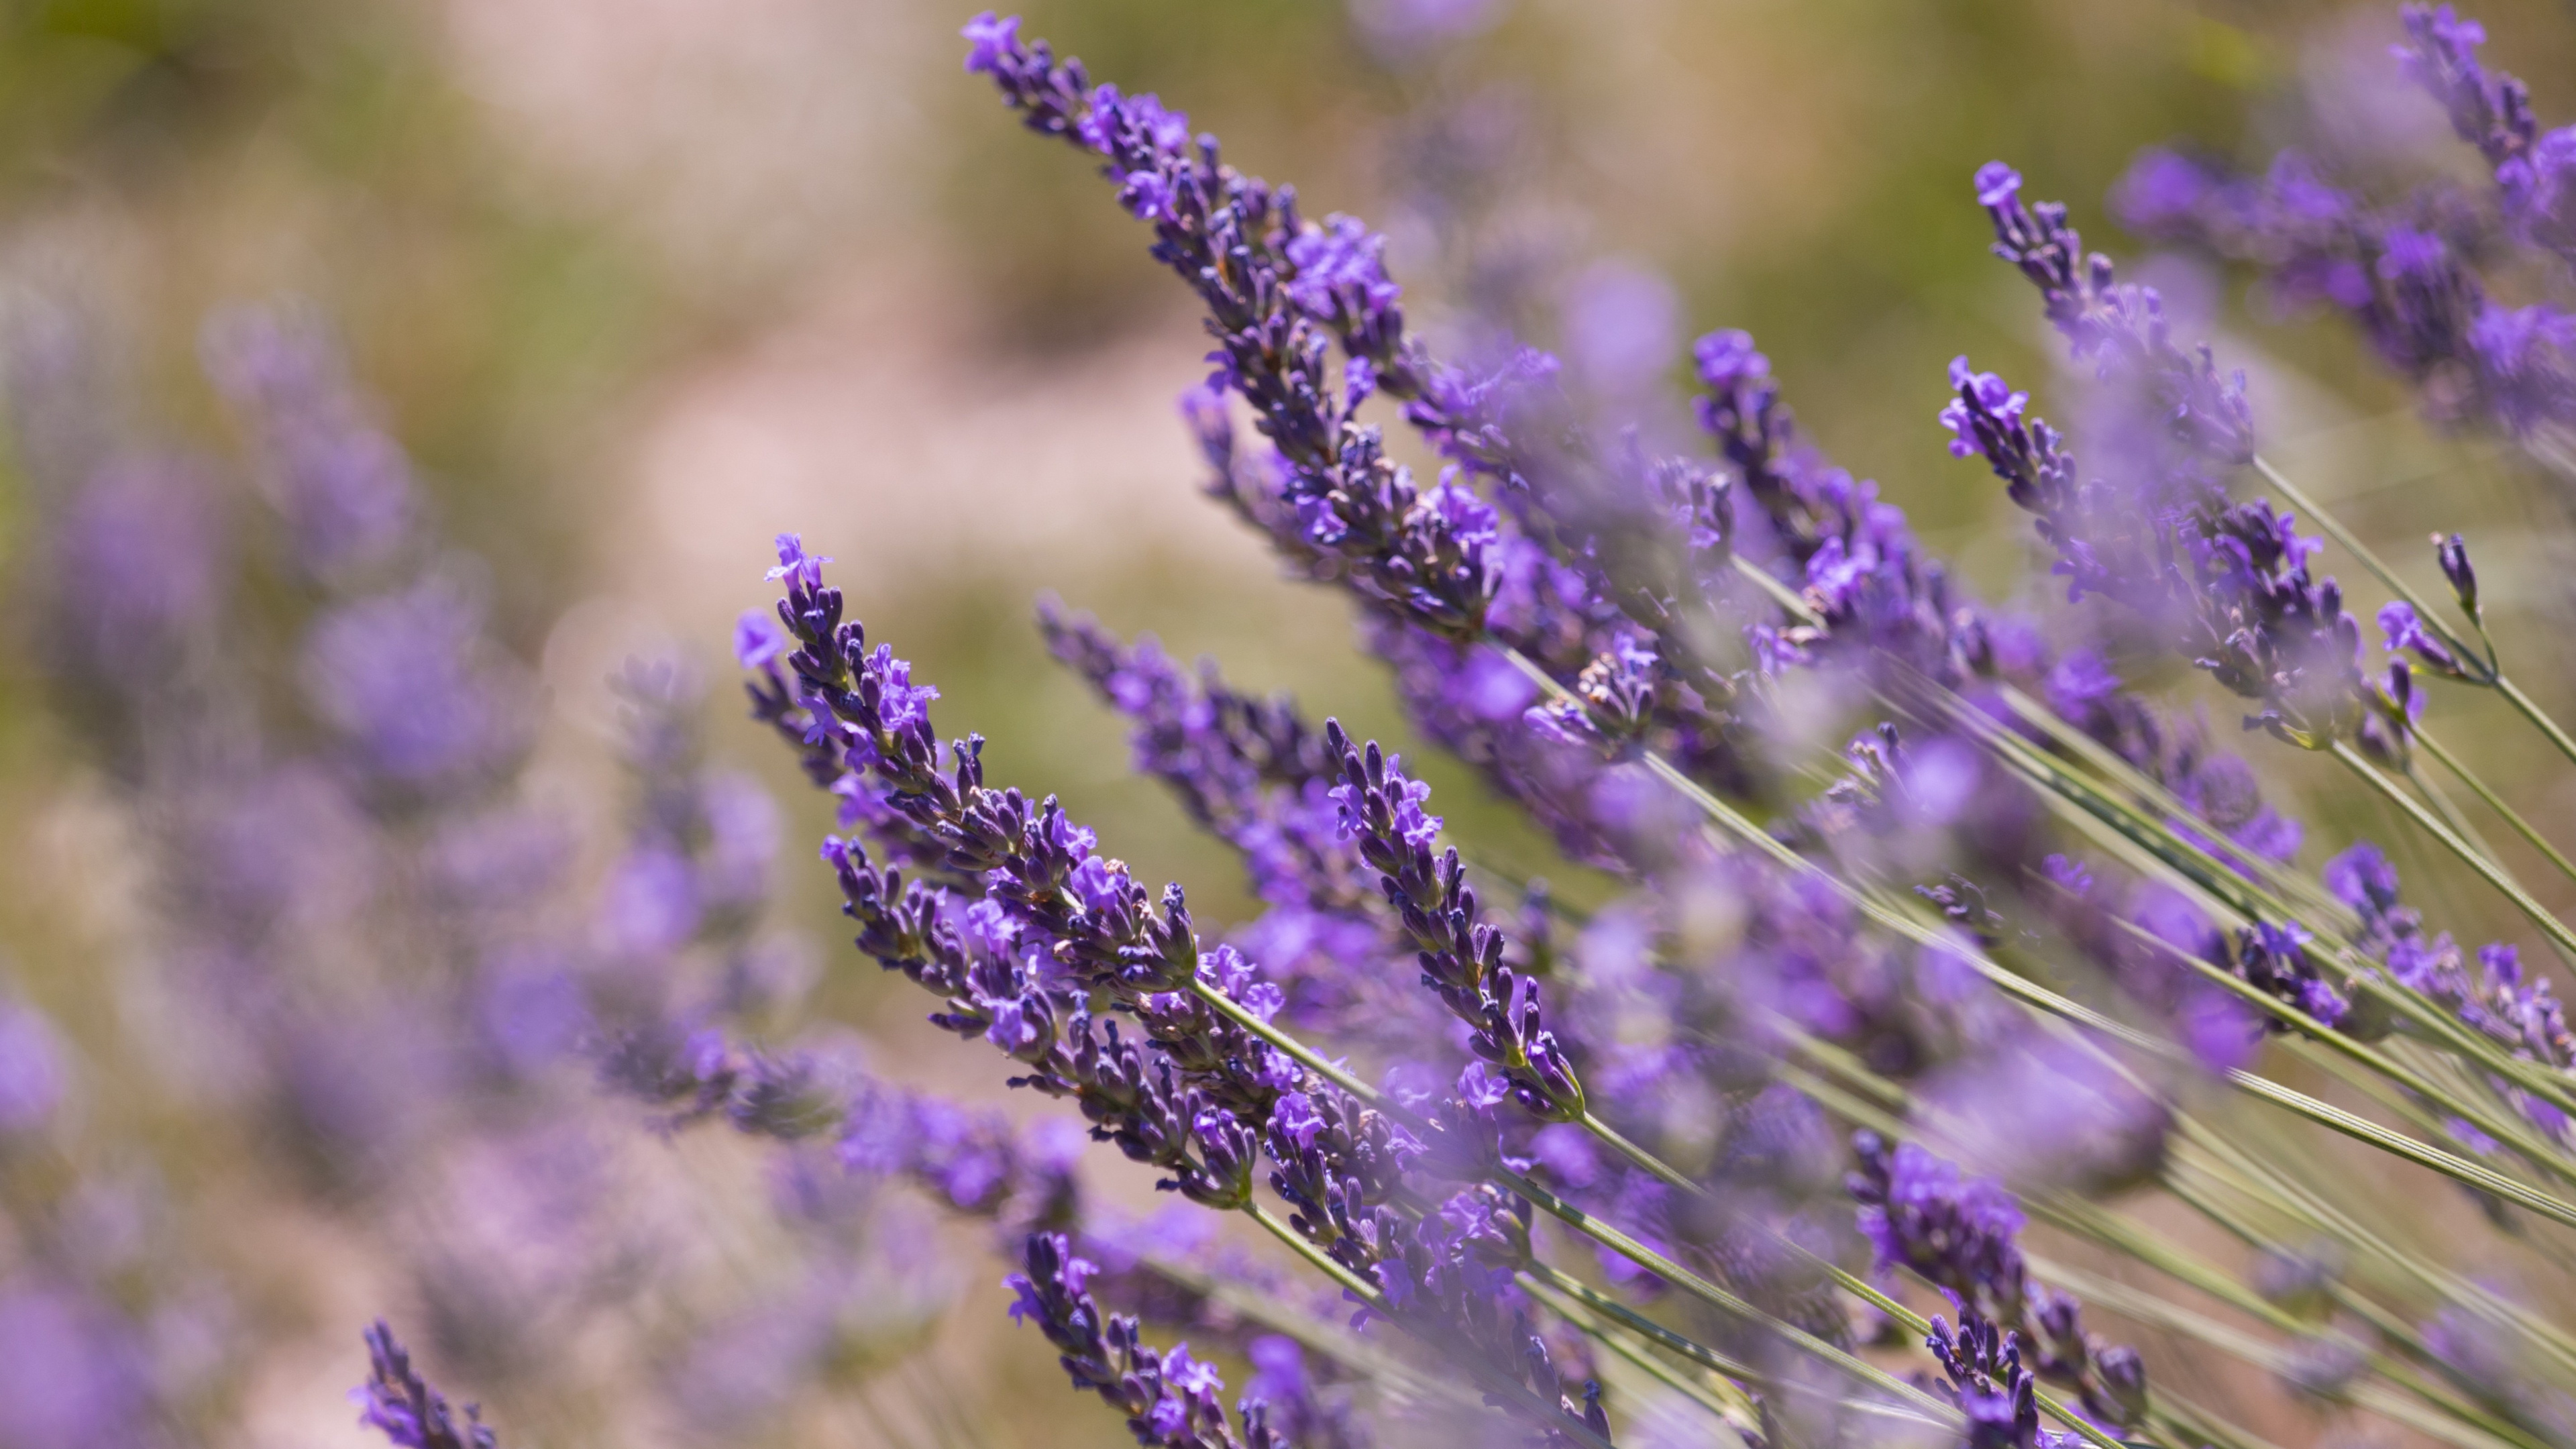 Lavender plants, Meadow, Spring flowers, 4K wallpaper, 3840x2160 4K Desktop